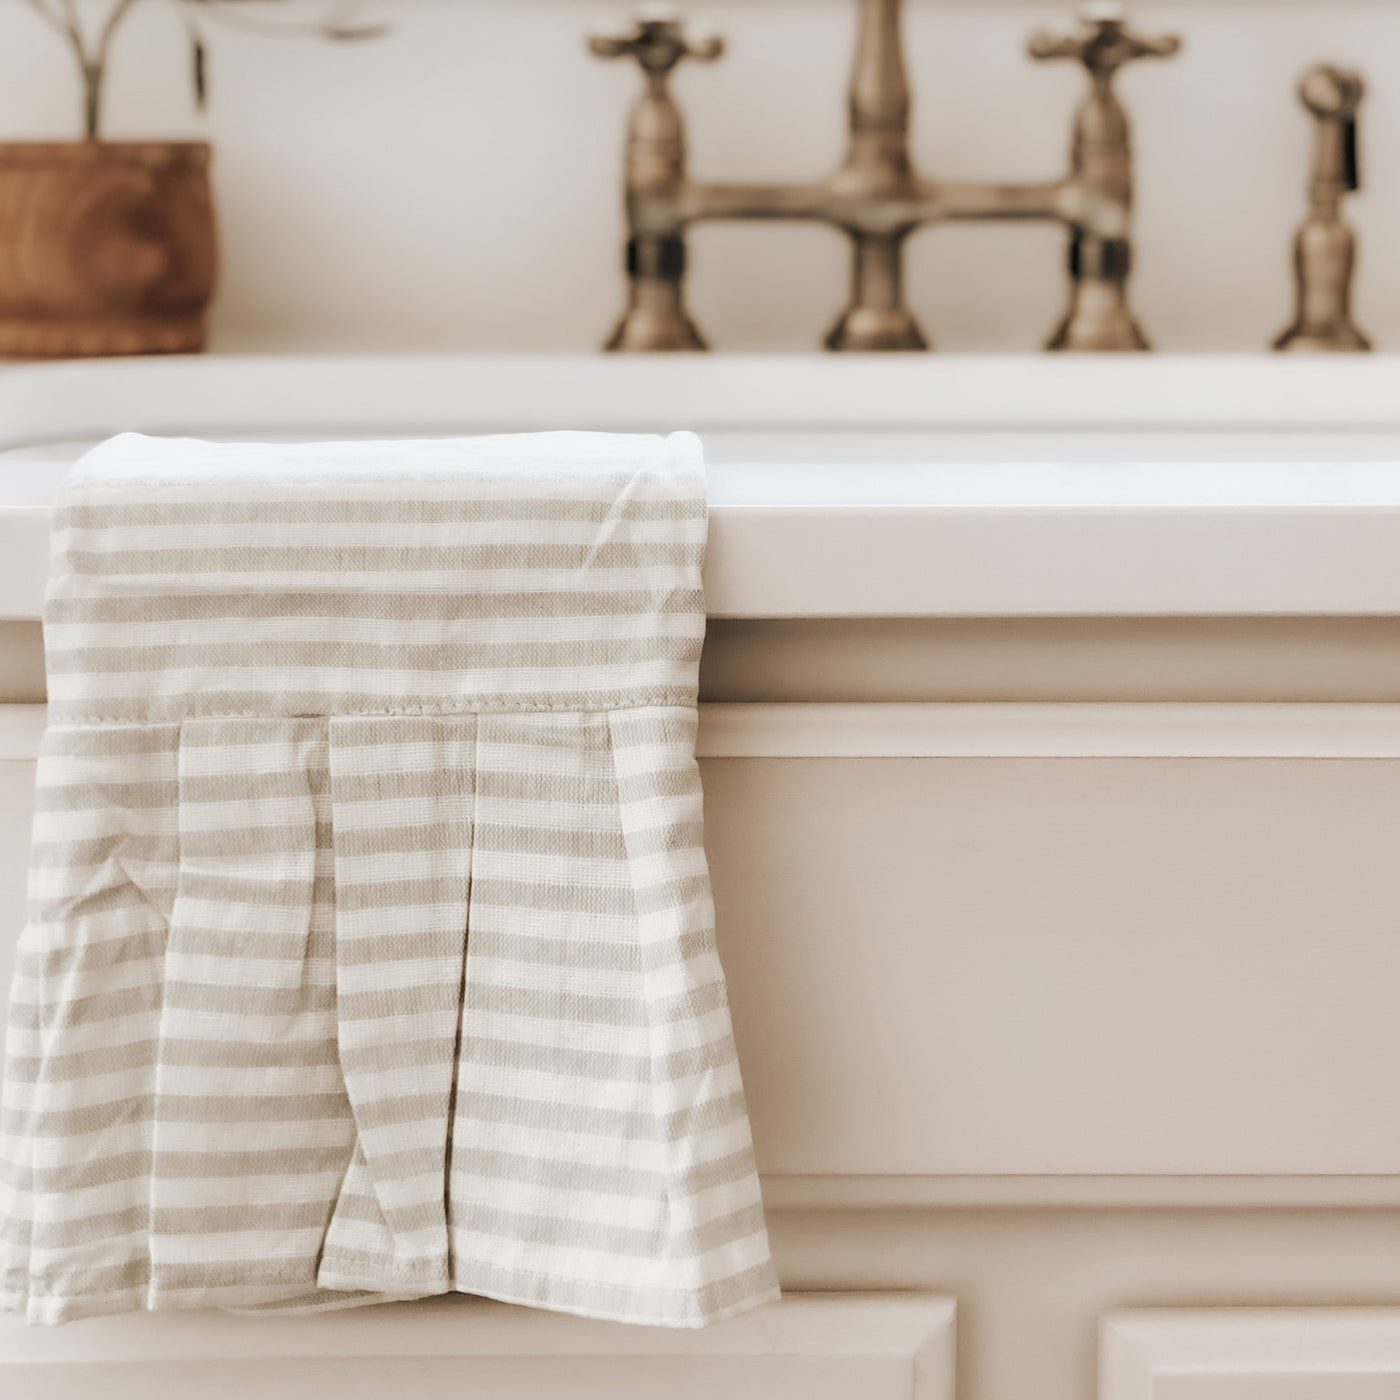 Tan Striped Tea Towel with Ruffle